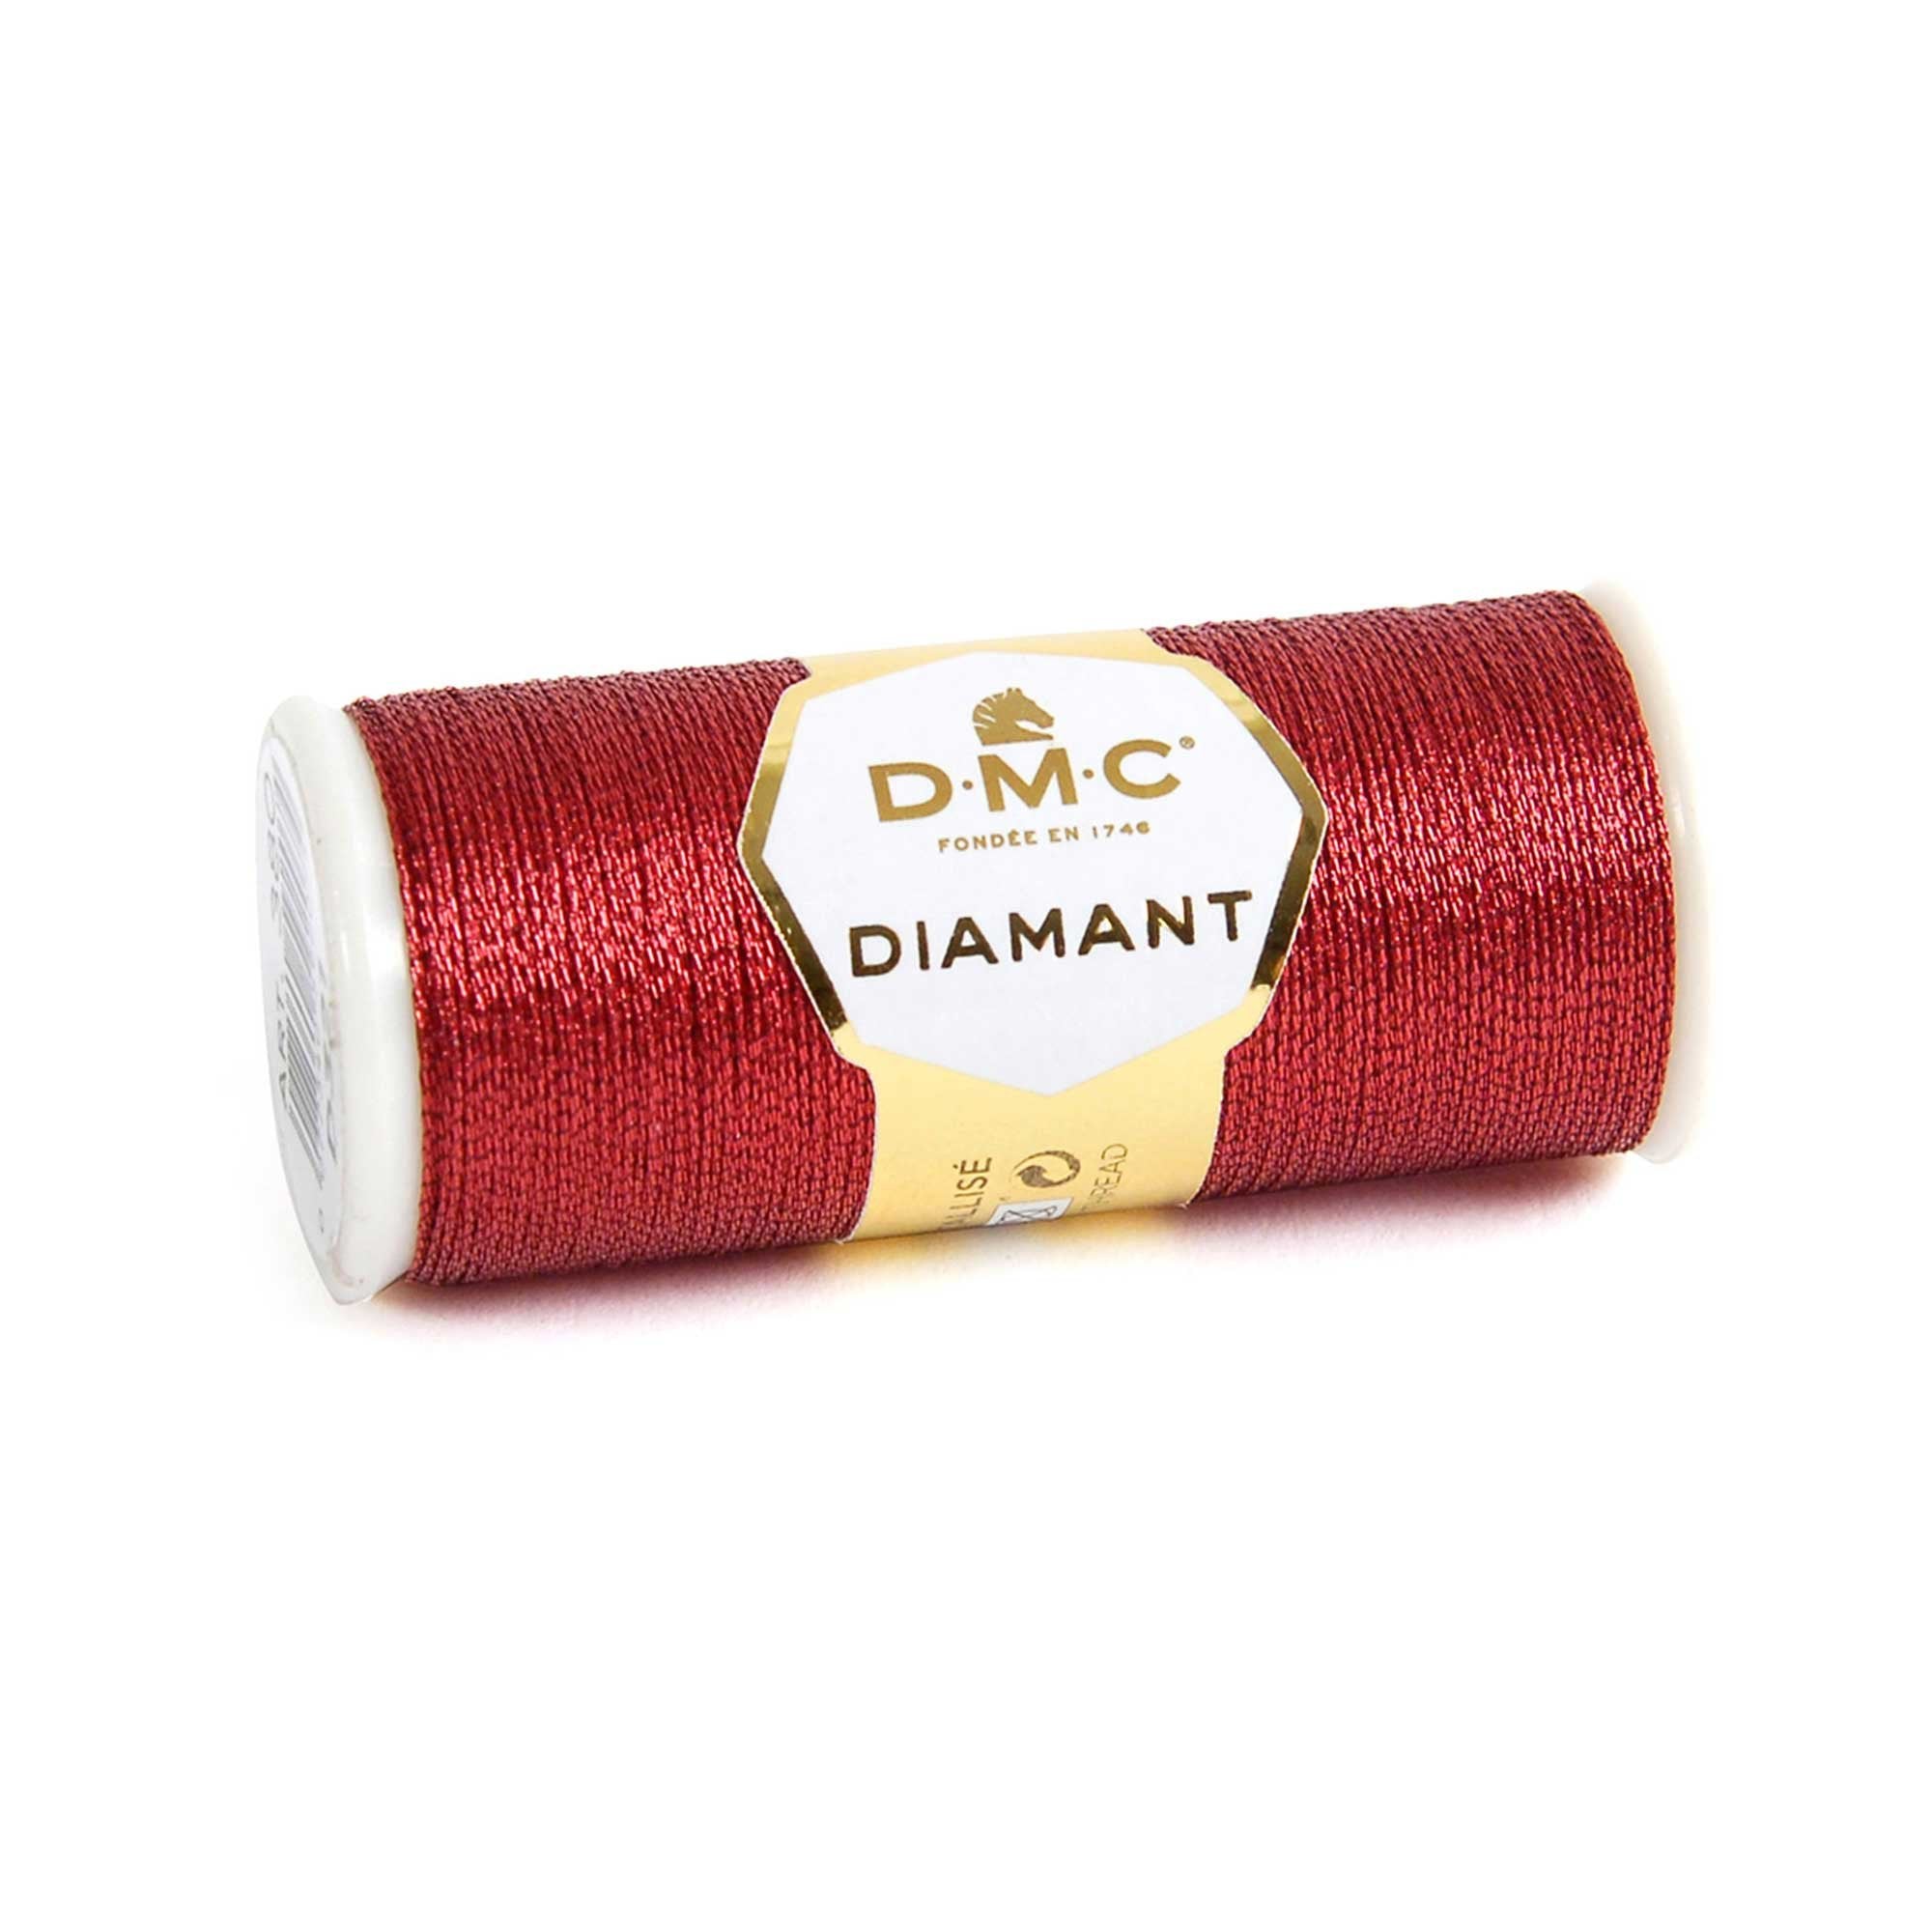 DMC Diamant Embroidery Thread 35m Spool - D321 Righed Ruby - Crafty Divas